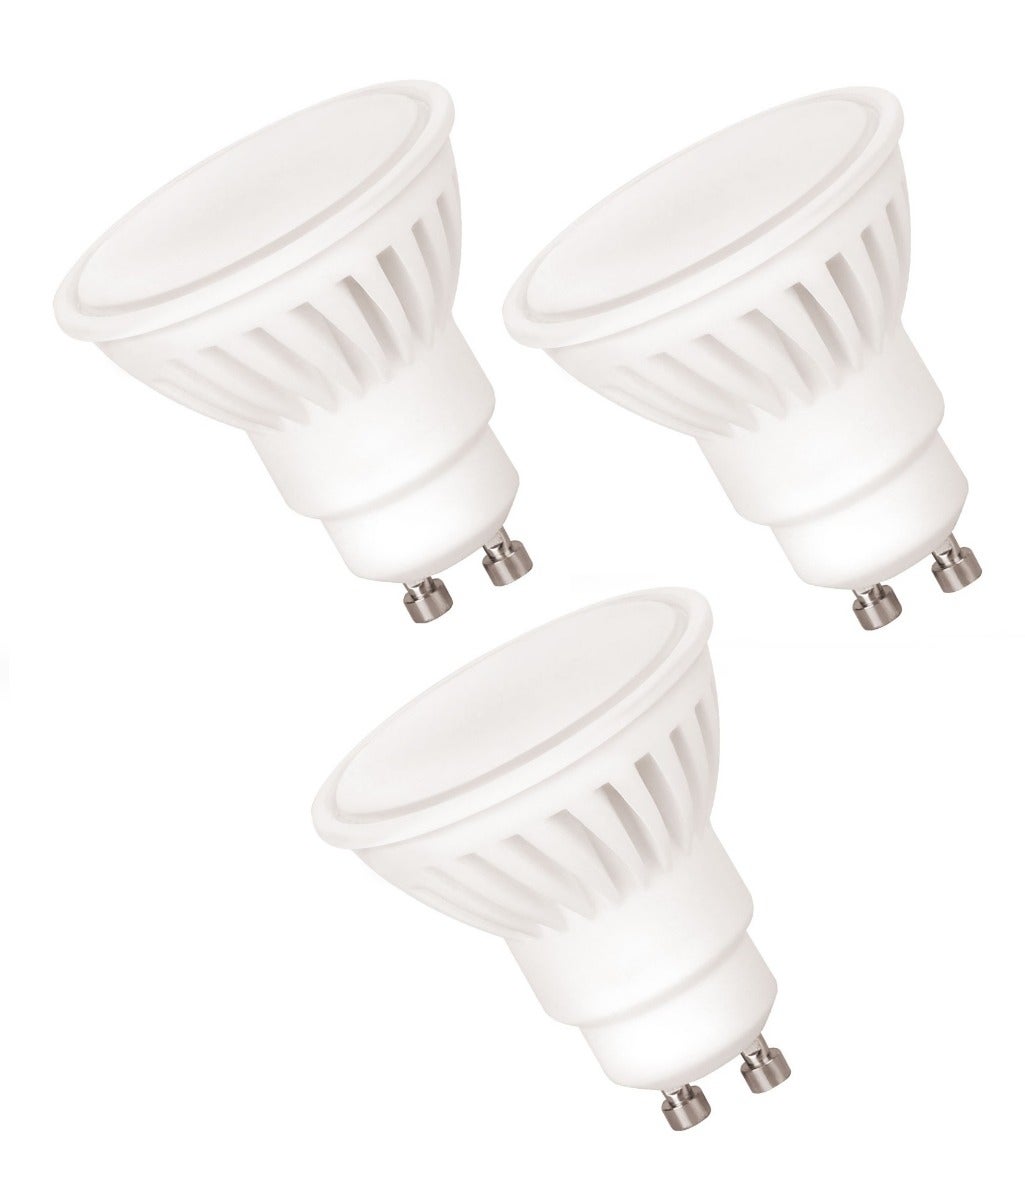 Lot de 10 Ampoules LED GU10,10W, 920lm, blanc chaud 3000K